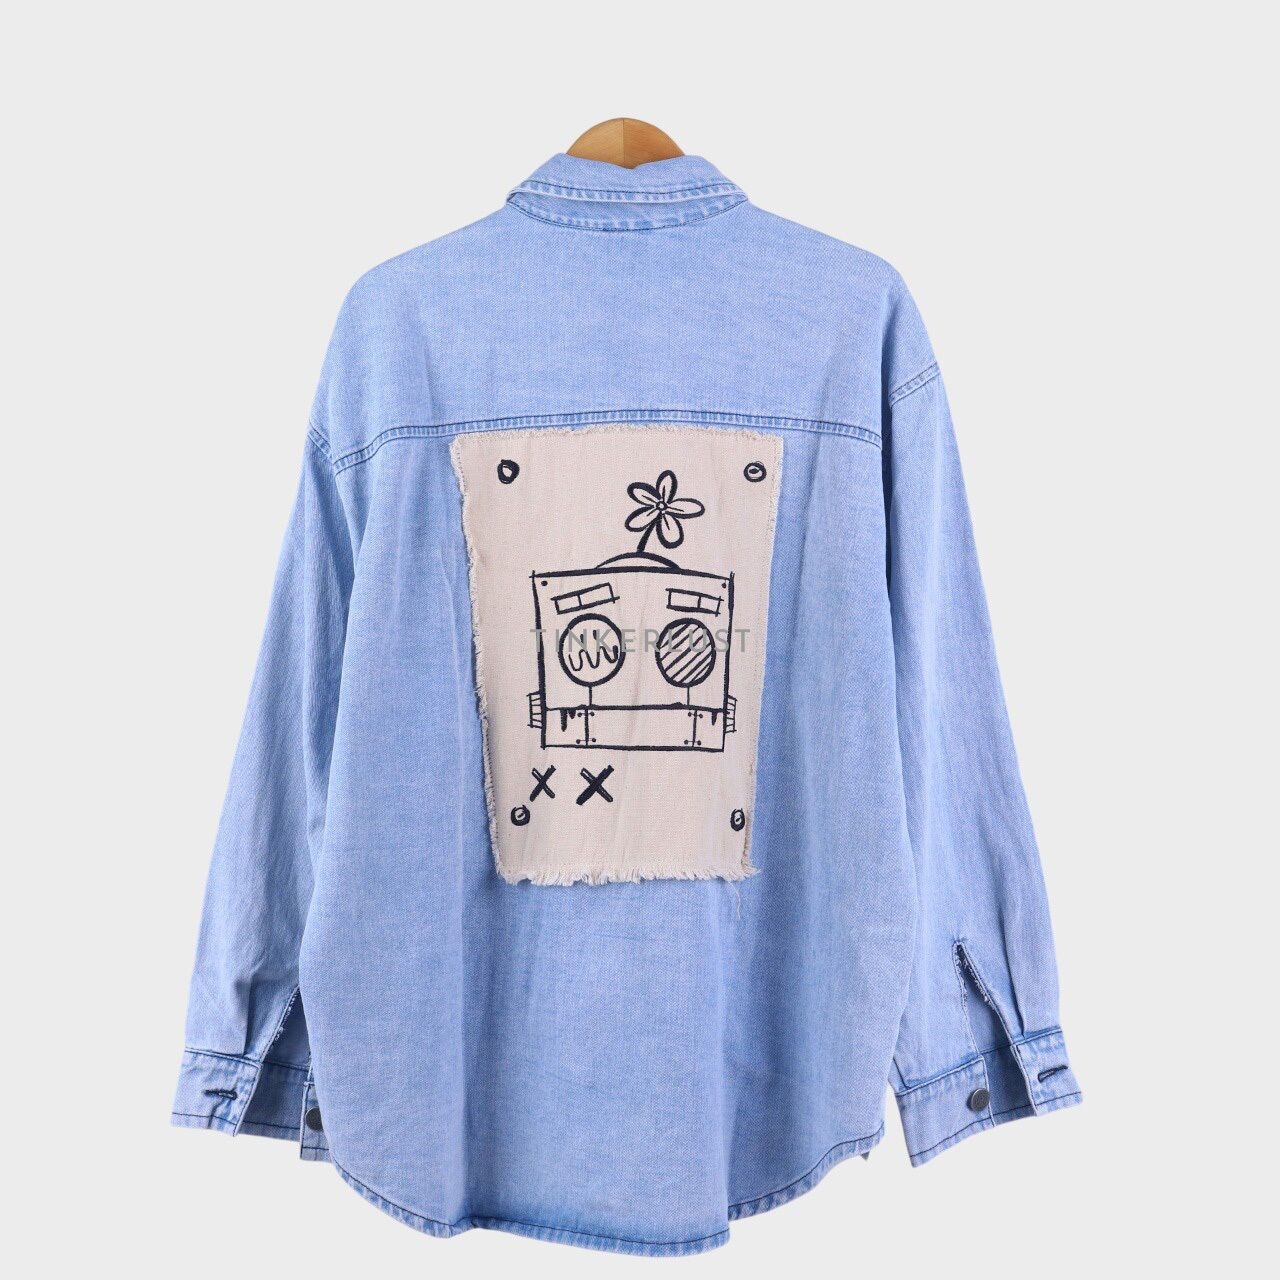 Antidot x Eunoia Light Blue Denim Oversized Shirt1